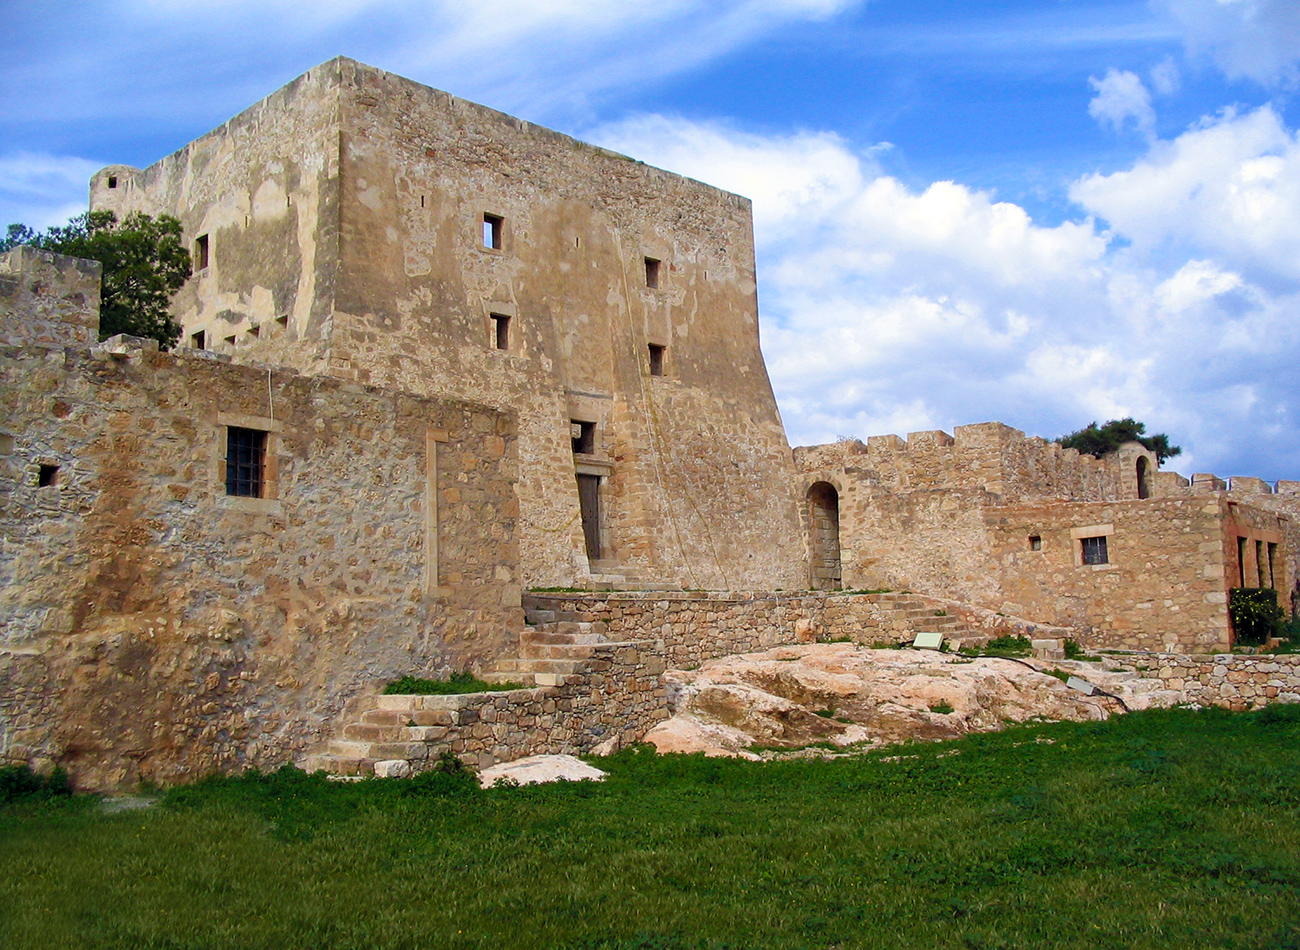 Résultat de recherche d'images pour "forteresse de kazarma de sitia"